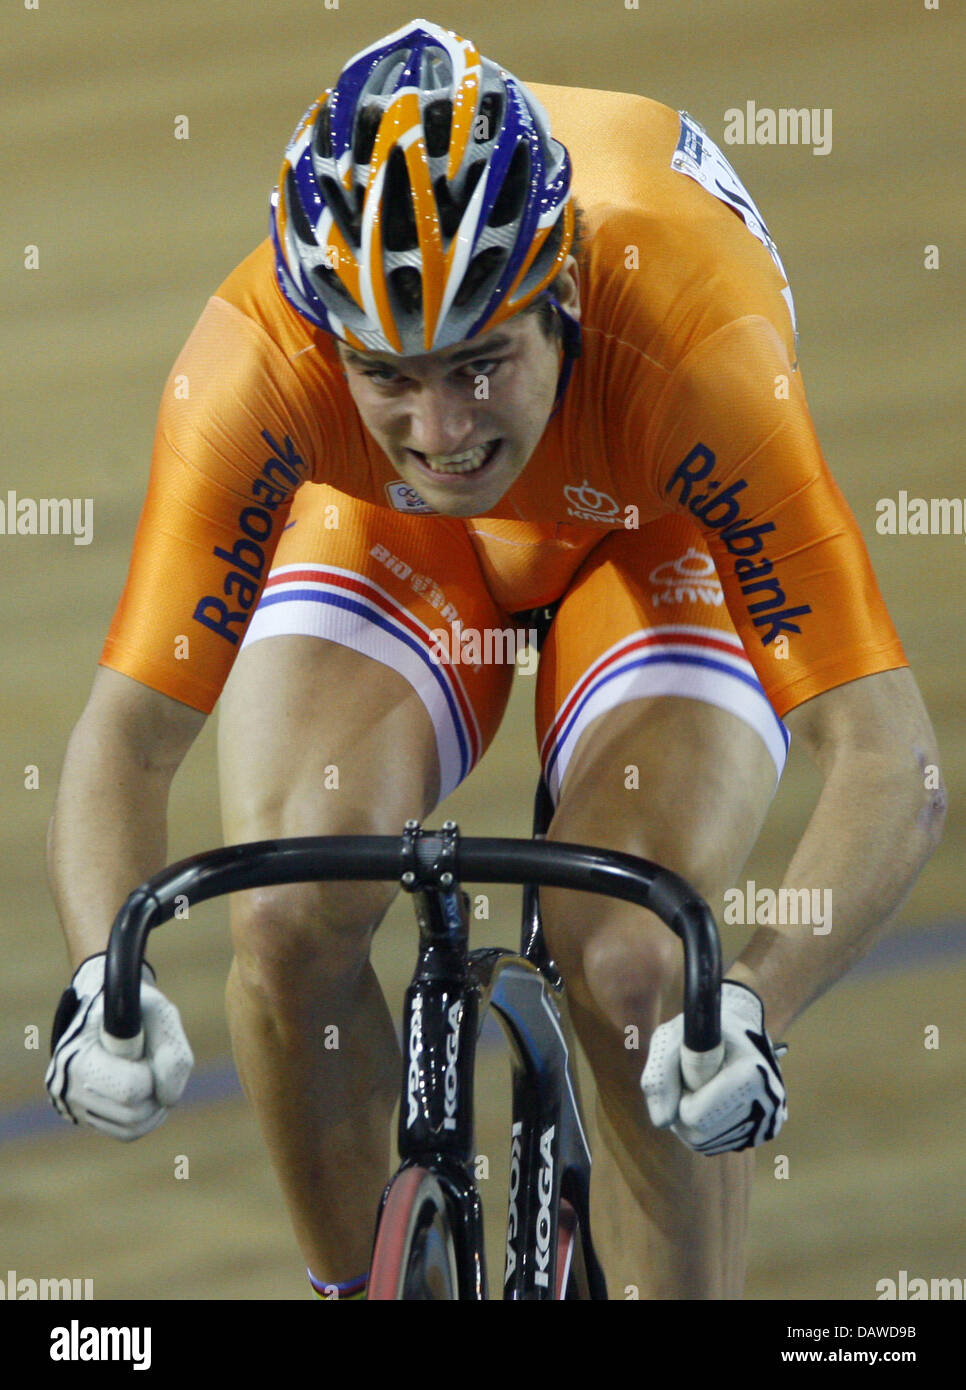 Le cycliste néerlandais Theo Bos illustré en action pendant la demi-finale du sprint au cyclisme sur piste Championnats du monde à Palma de Majorque, Espagne, dimanche, 1 avril 2007. Bos seront en compétition pour la médaille d'or. Photo : Johannes Eisele Banque D'Images